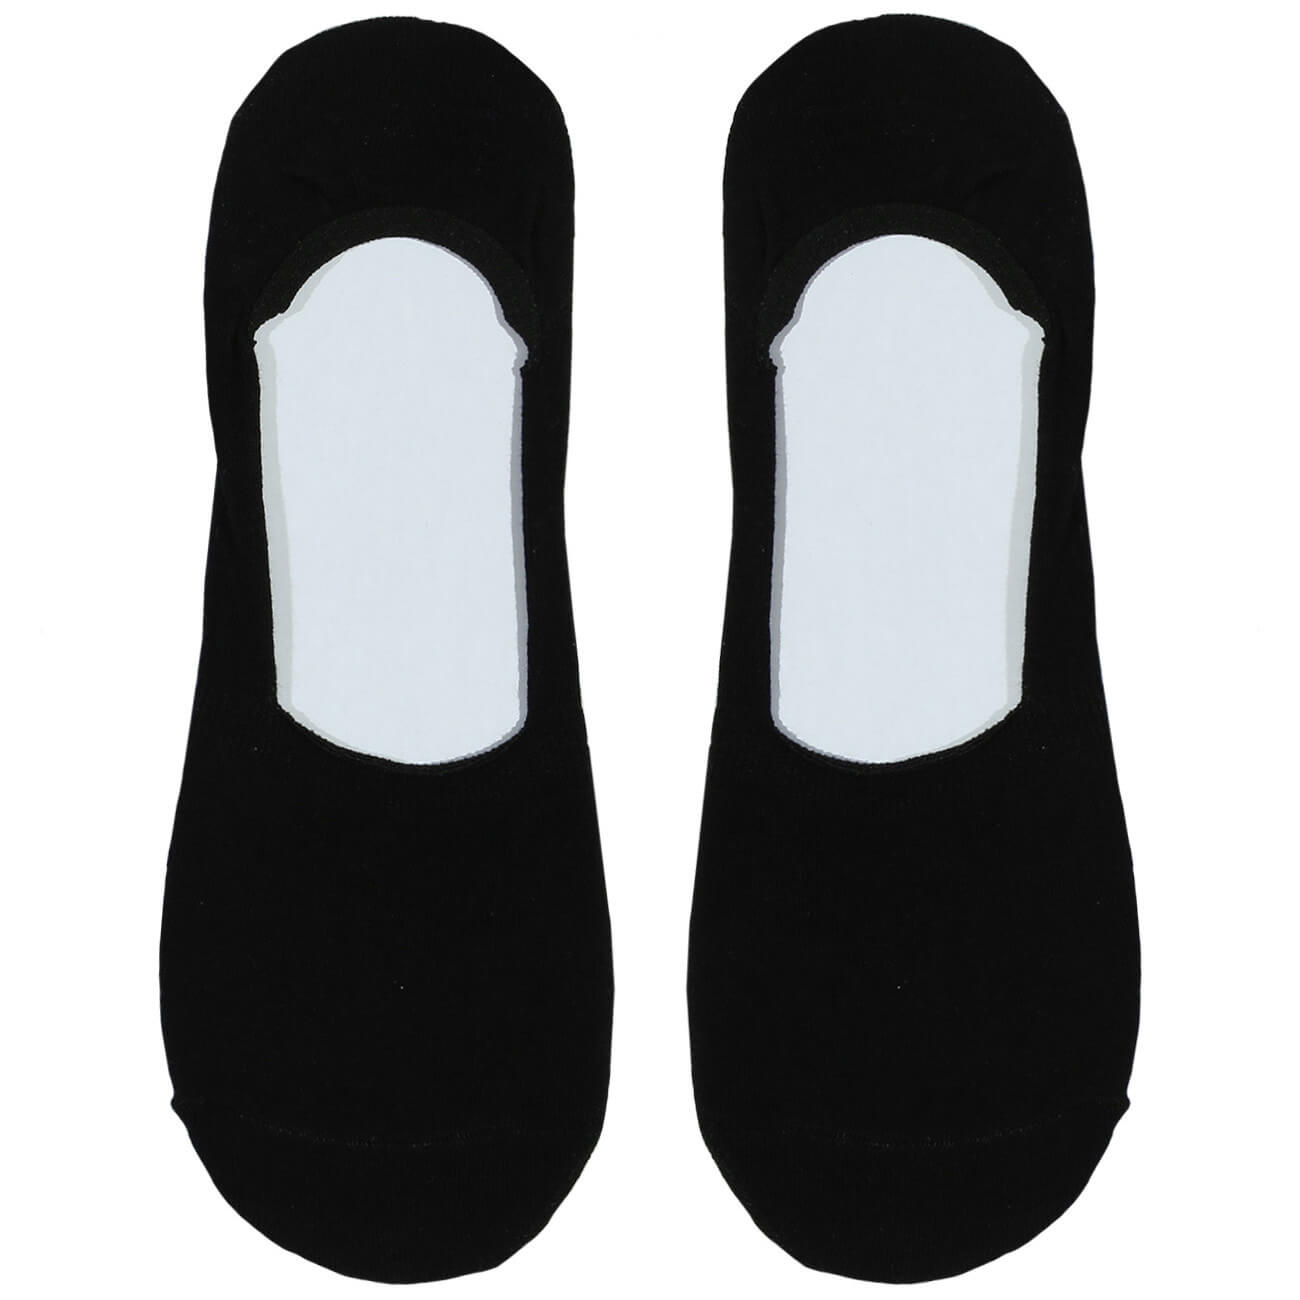 Носки-следки мужские, р. 39-42, хлопок/полиэстер, черные, Basic носки для мужчин хлопок esli classic 000 черные р 25 19с 145спе